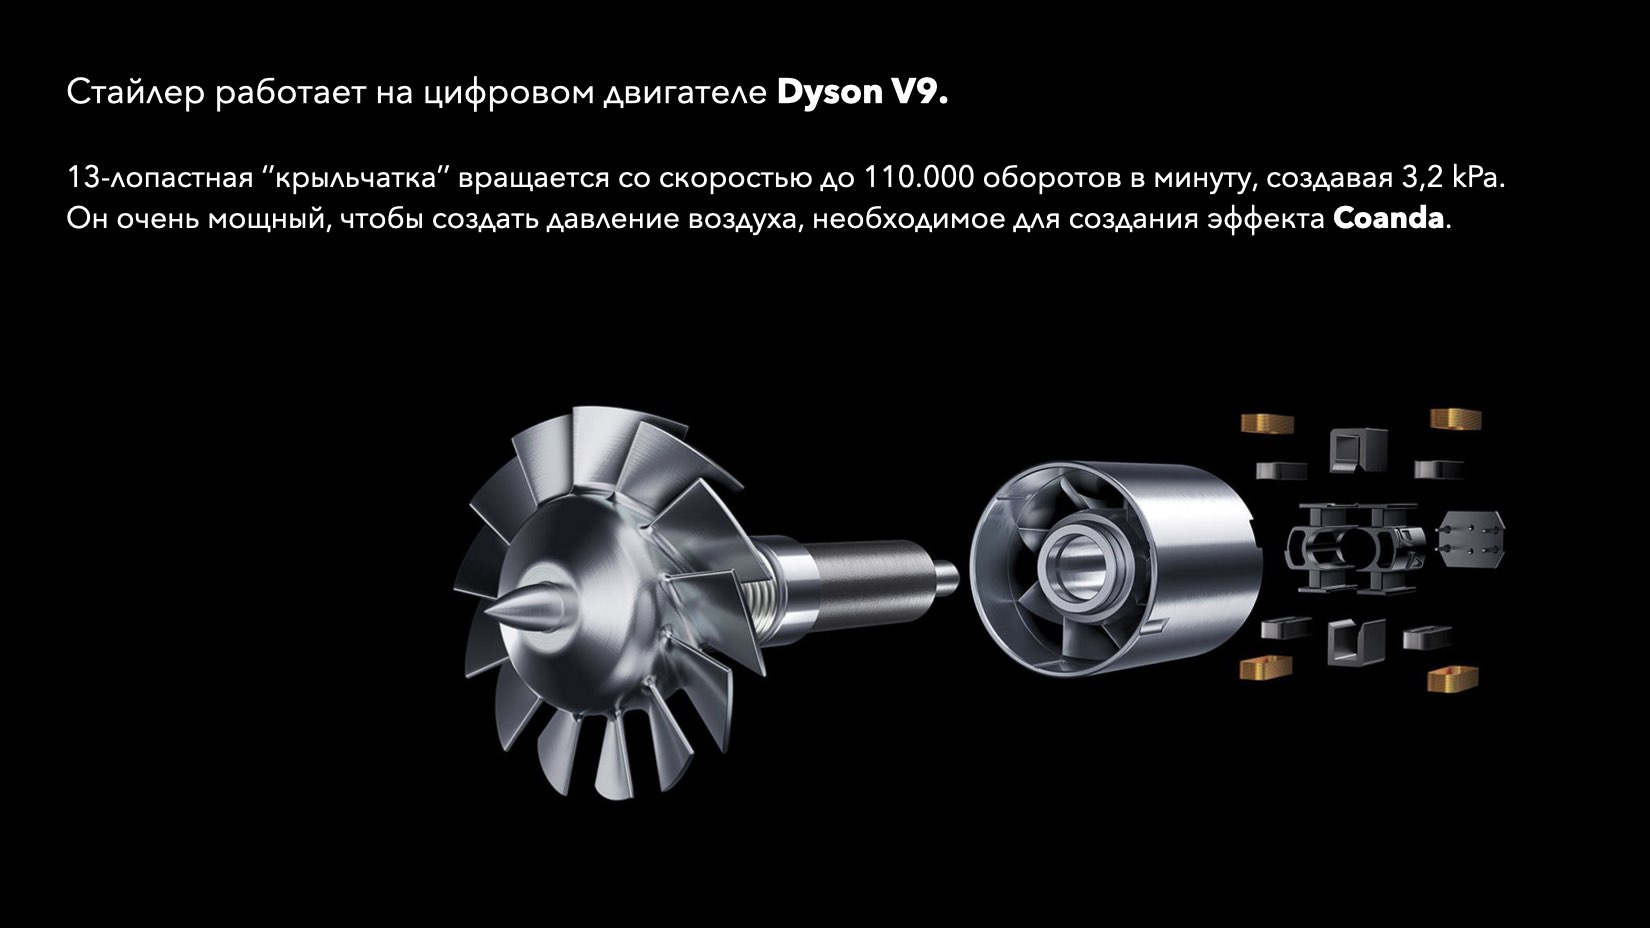 Dyson hs01 мотор. Dyson Airwrap hs01 Motor. Dyson мощный двигатель. Мотор на стайлер Дайсон. Инструкция по применению дайсона